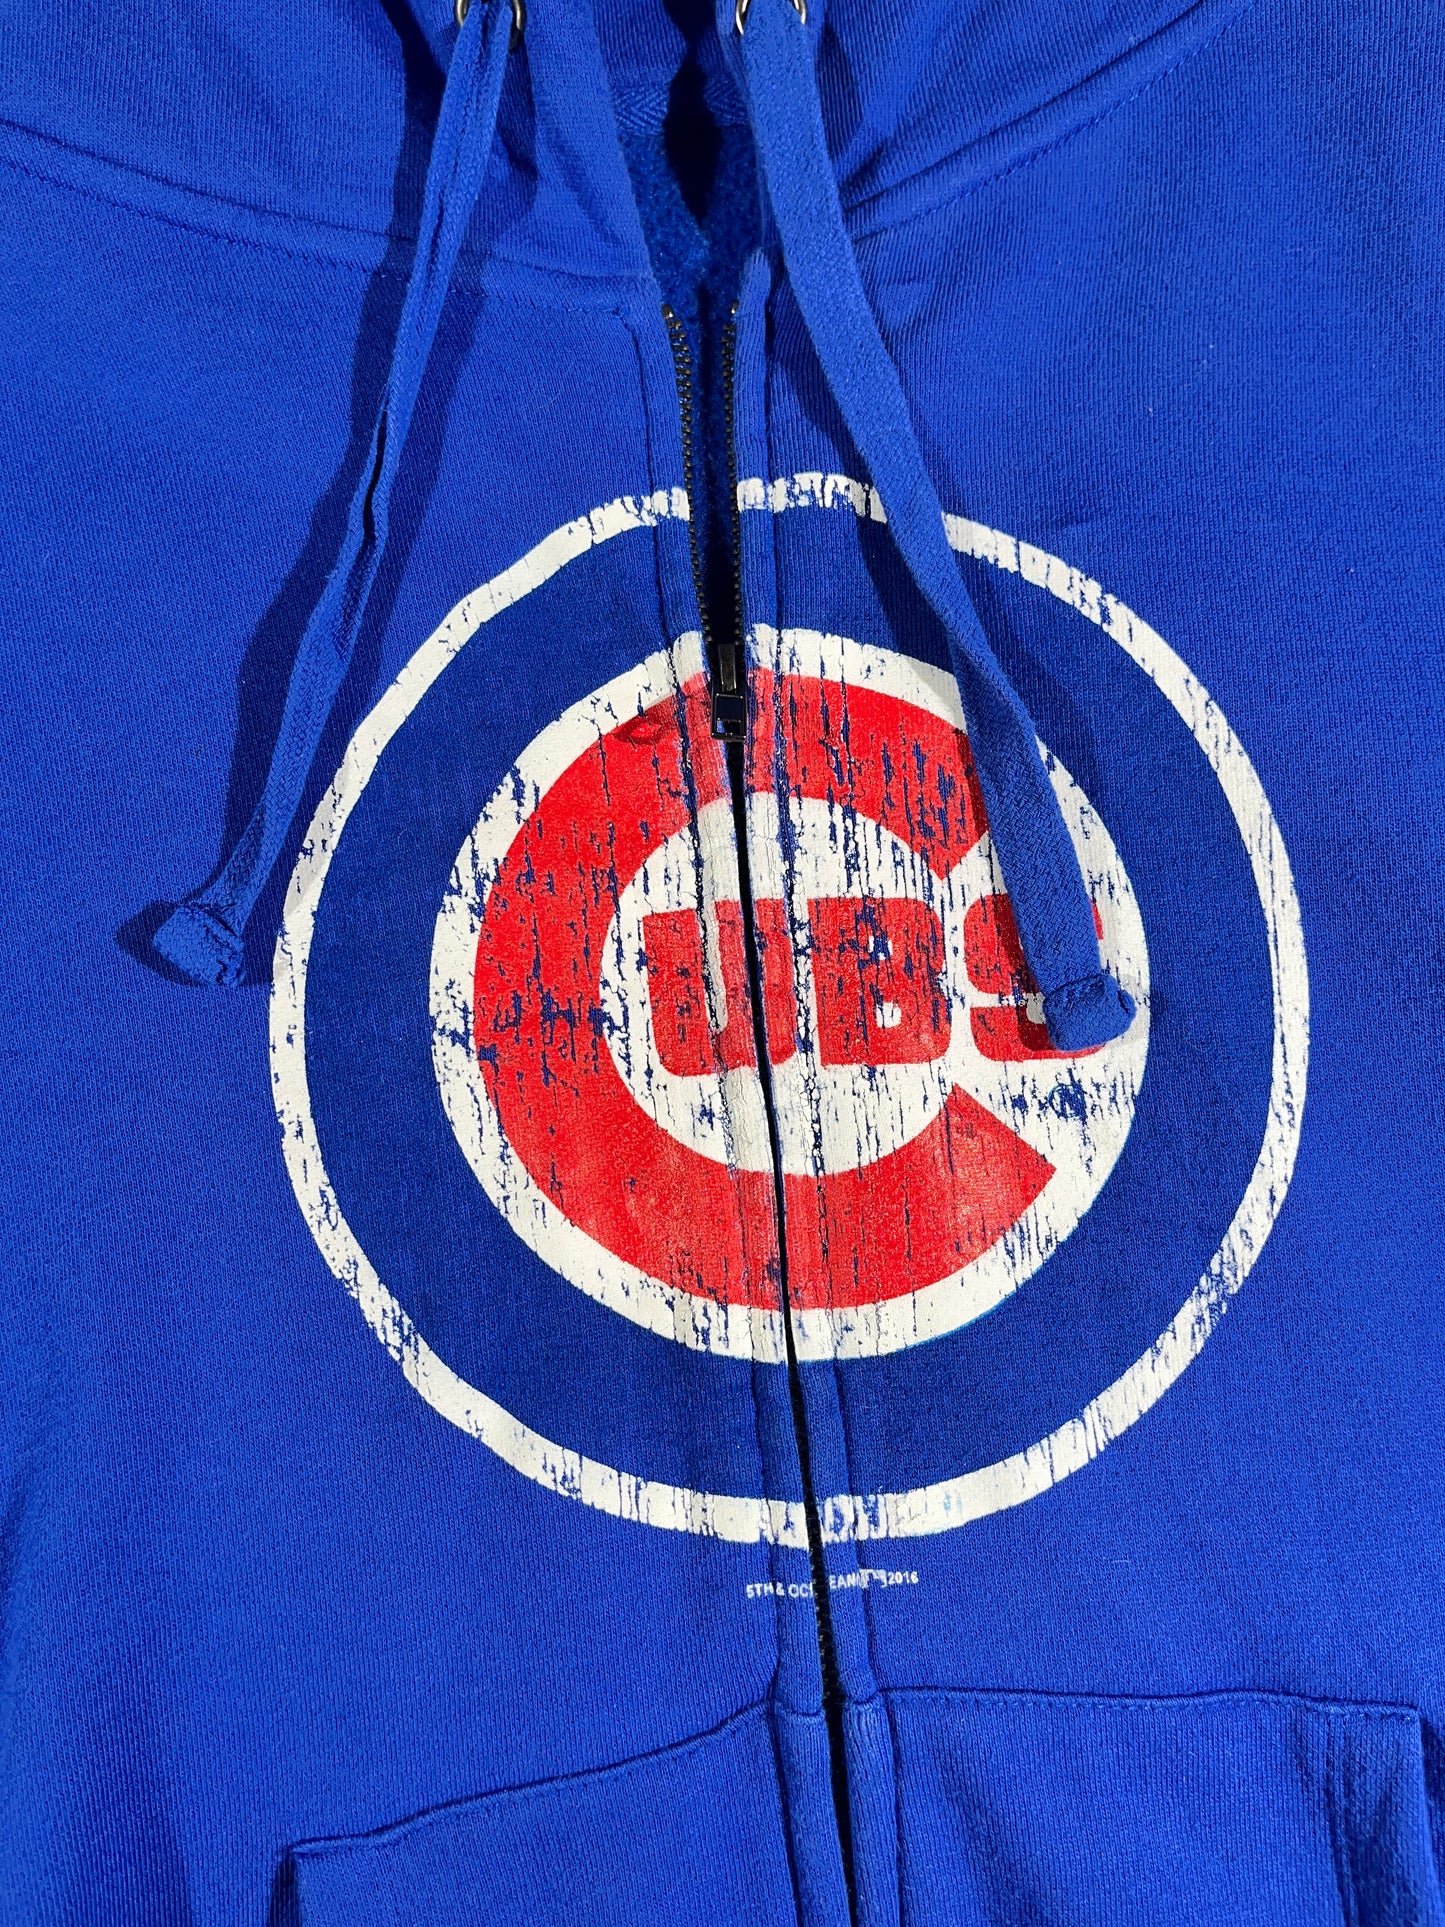 Vintage Chicago Cubs Hoodie Zip Up Big Hood